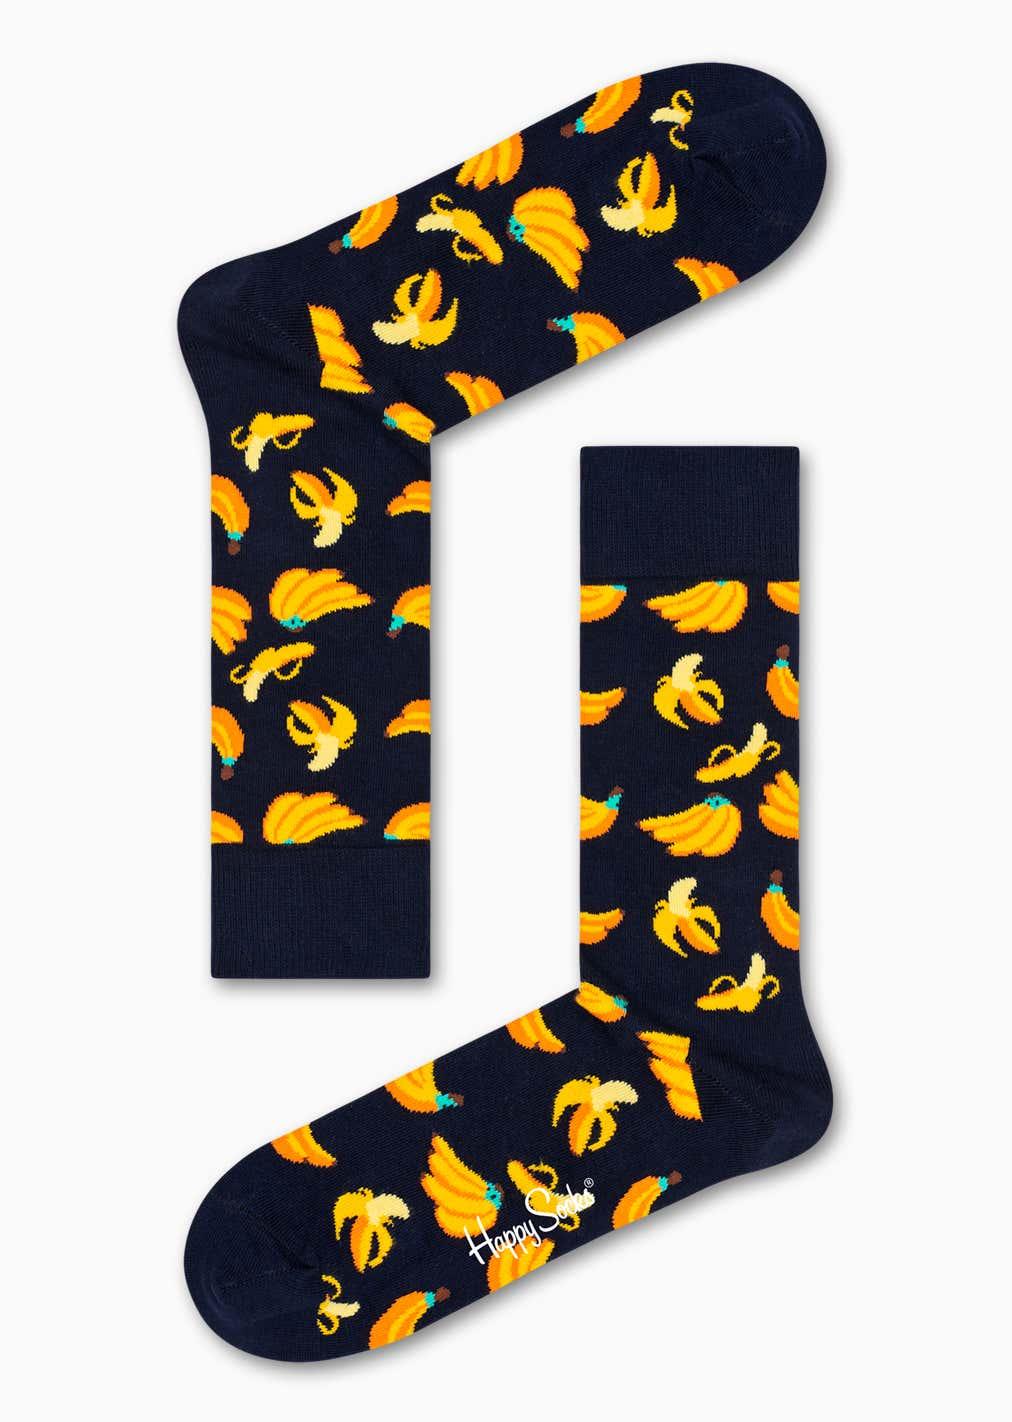 Happy Socks Banana Sock - No Generation